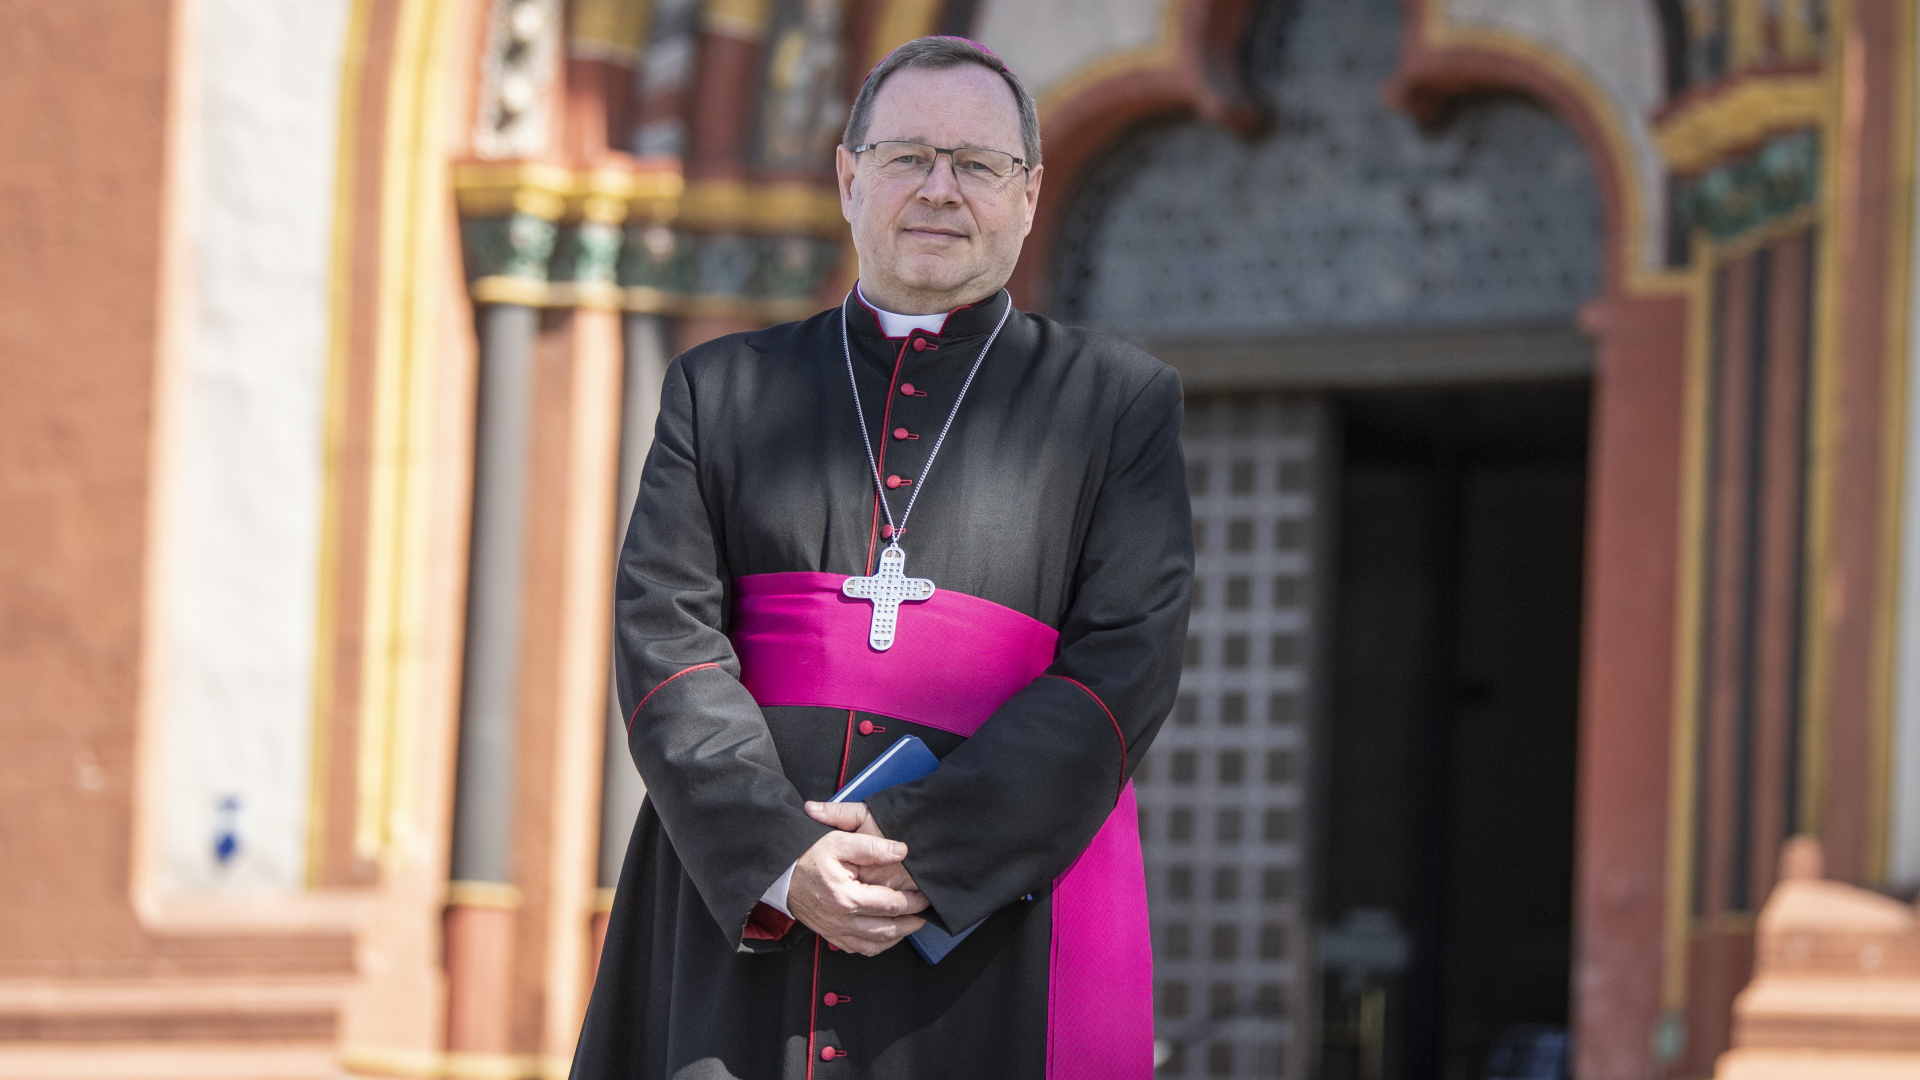 Georg Bätzing, Bischof von Limburg und Vorsitzender der Deutschen Bischofskonferenz. | dpa